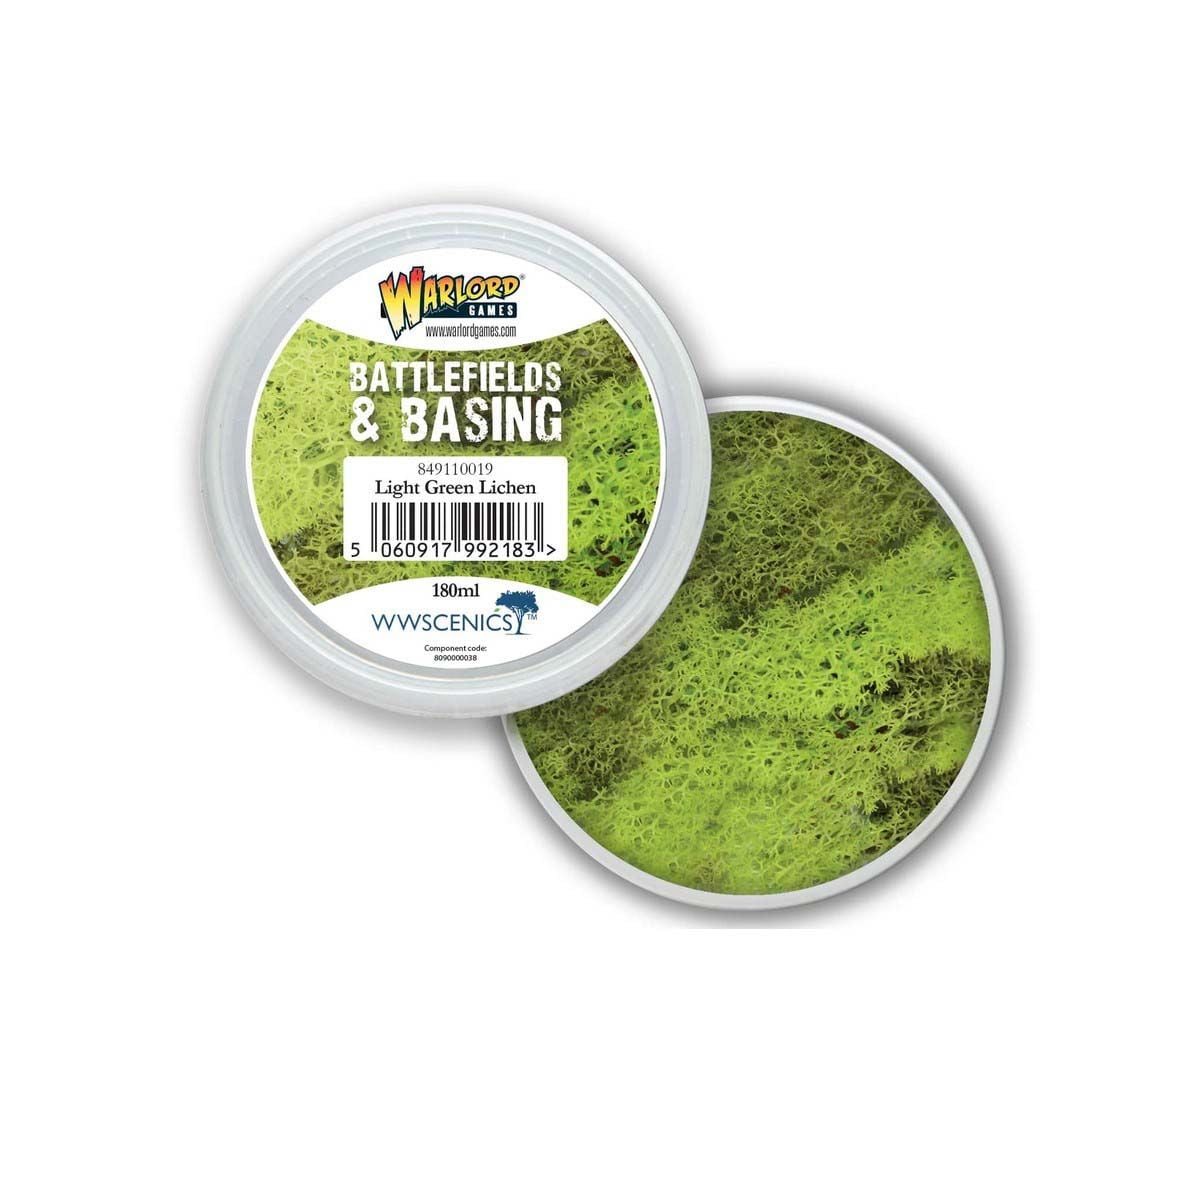 Battlefields & Basing: Light Green Lichen